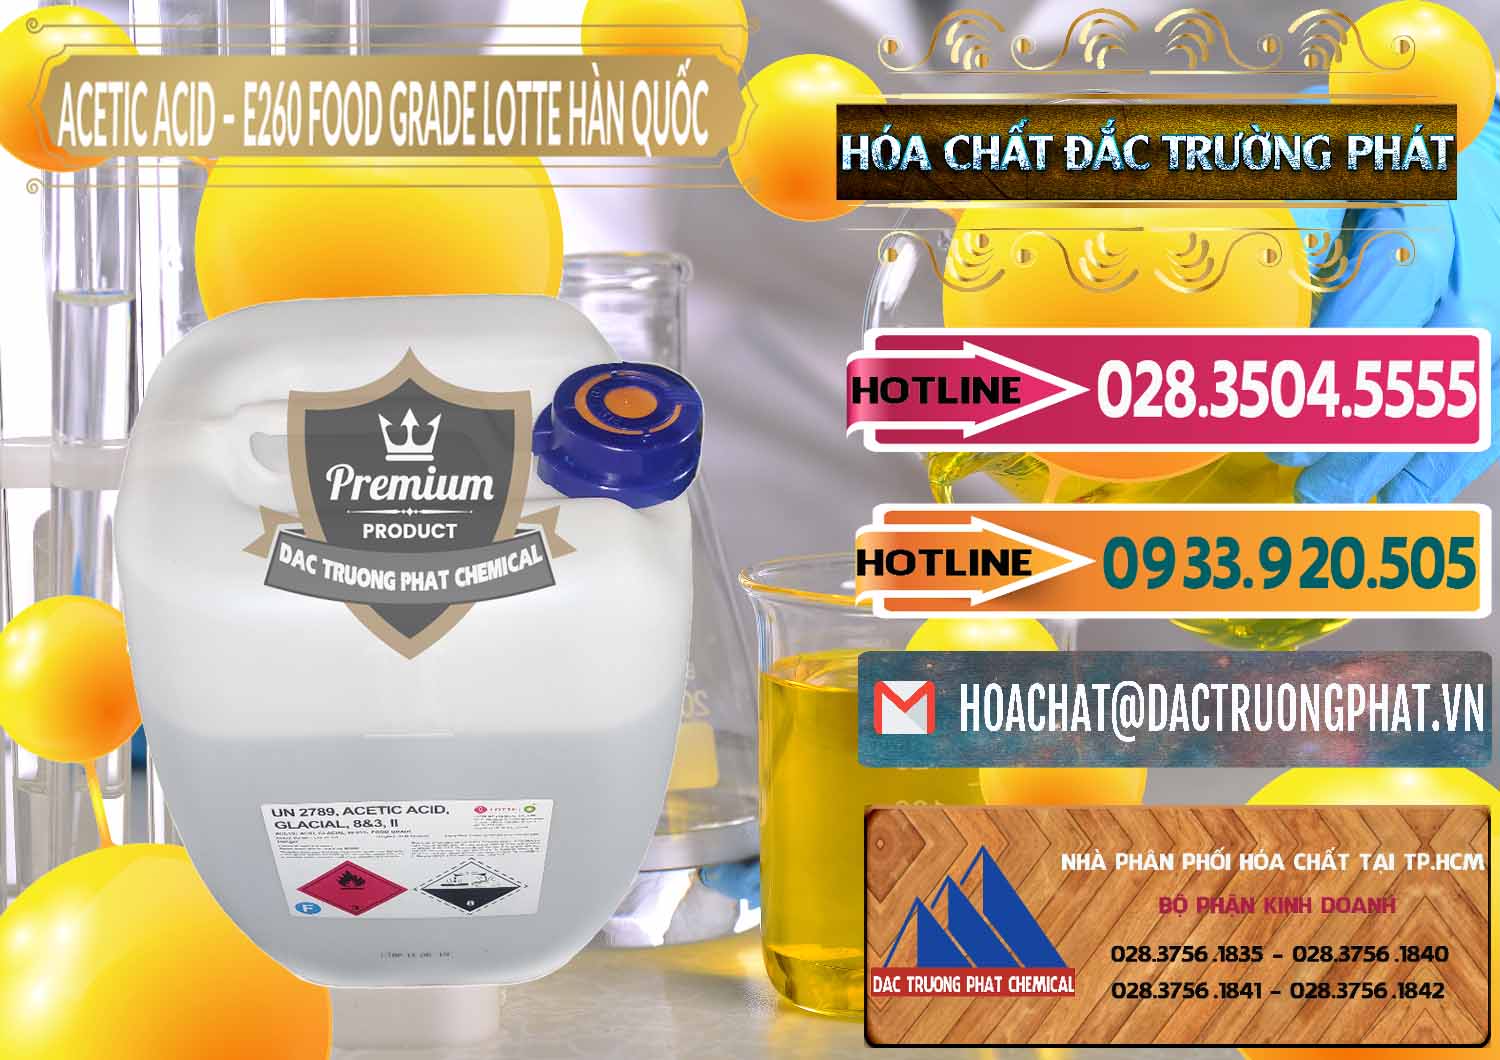 Nơi chuyên bán _ cung cấp Acetic Acid – Axit Acetic E260 Food Grade Hàn Quốc Lotte Korea - 0003 - Công ty bán ( cung cấp ) hóa chất tại TP.HCM - dactruongphat.vn